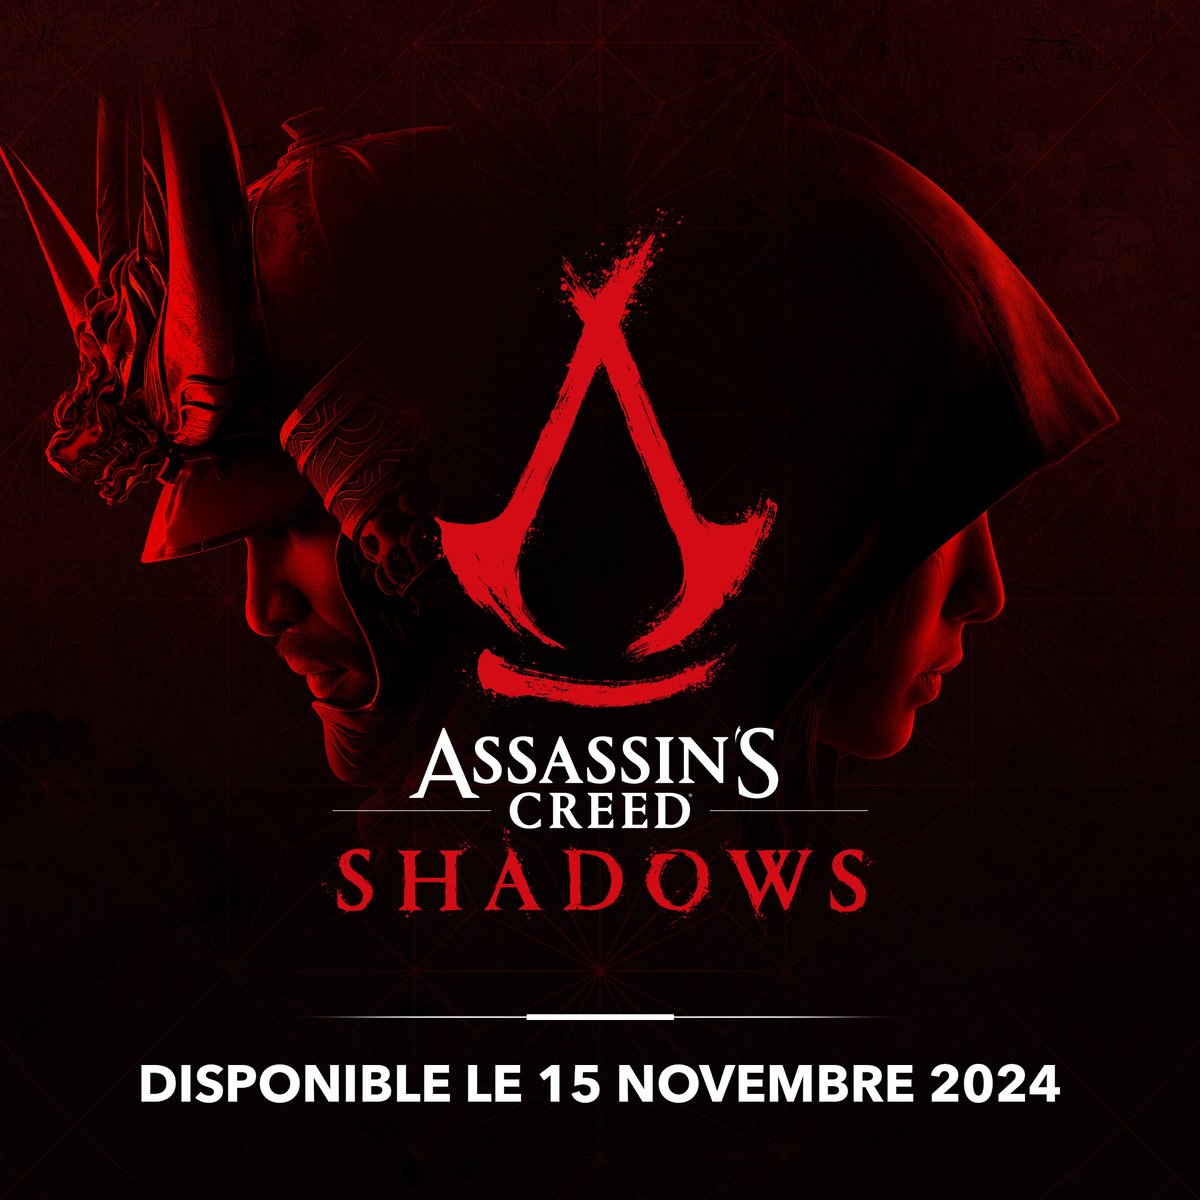 Découvrez les personnages principaux d'Assassin's Creed Shadows : Naoe, une assassine shinobi expérimentée, et Yasuke, le puissant samouraï de légende ⚔️ #AssassinsCreedShadows